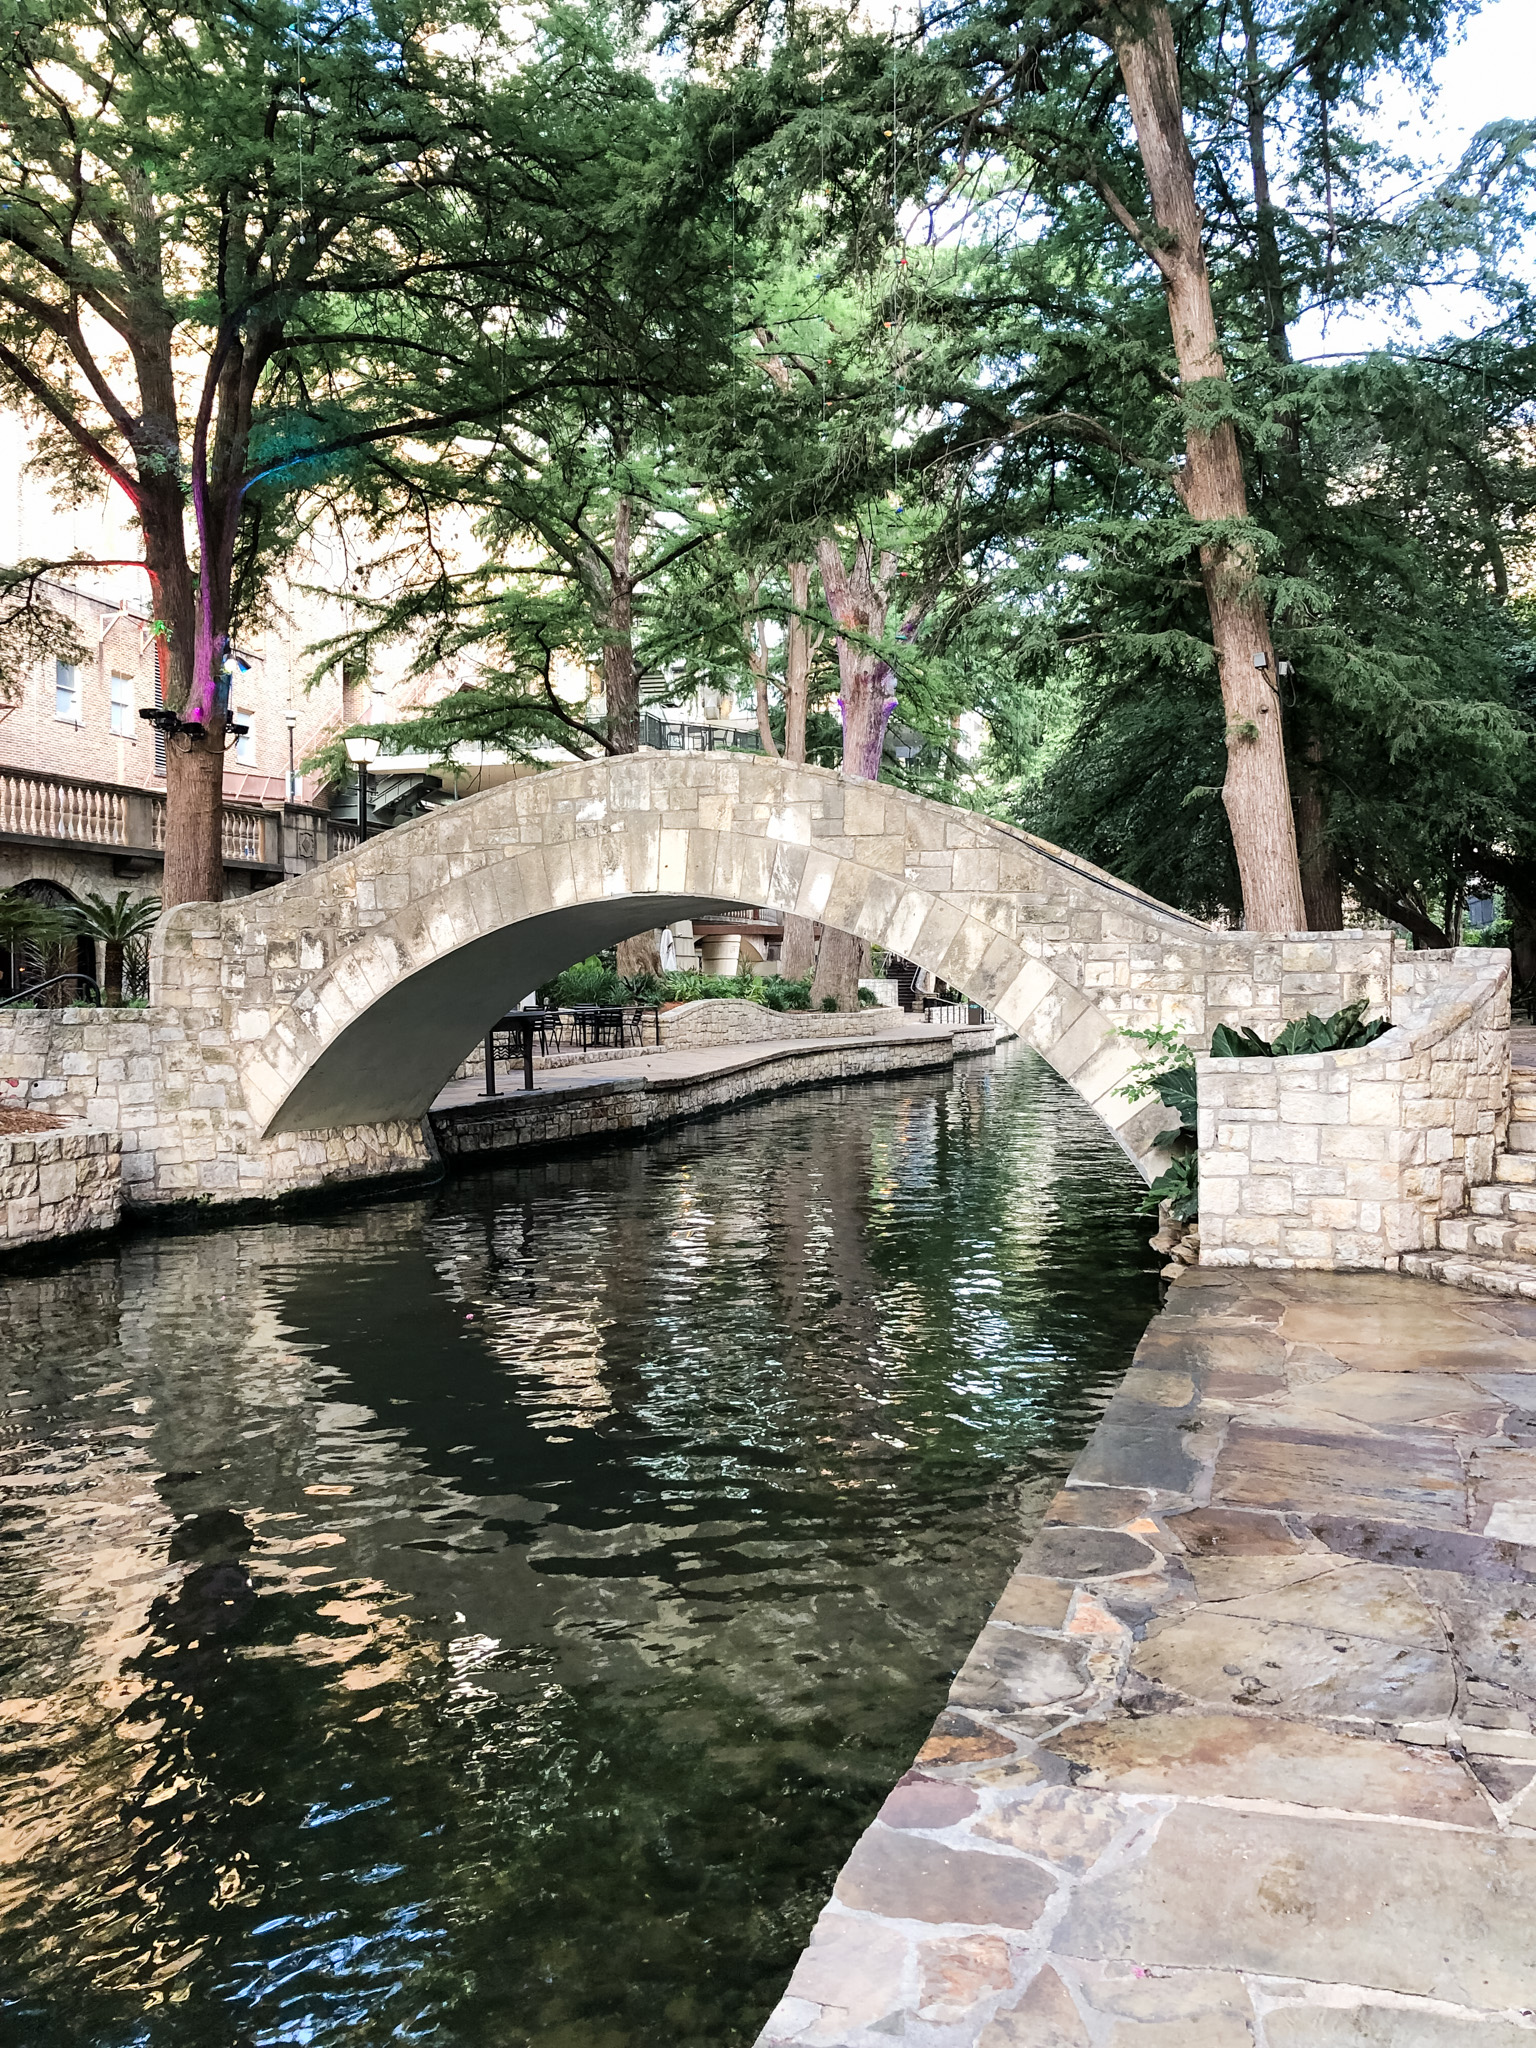 The Selena bridge at the San Antonio Riverwalk